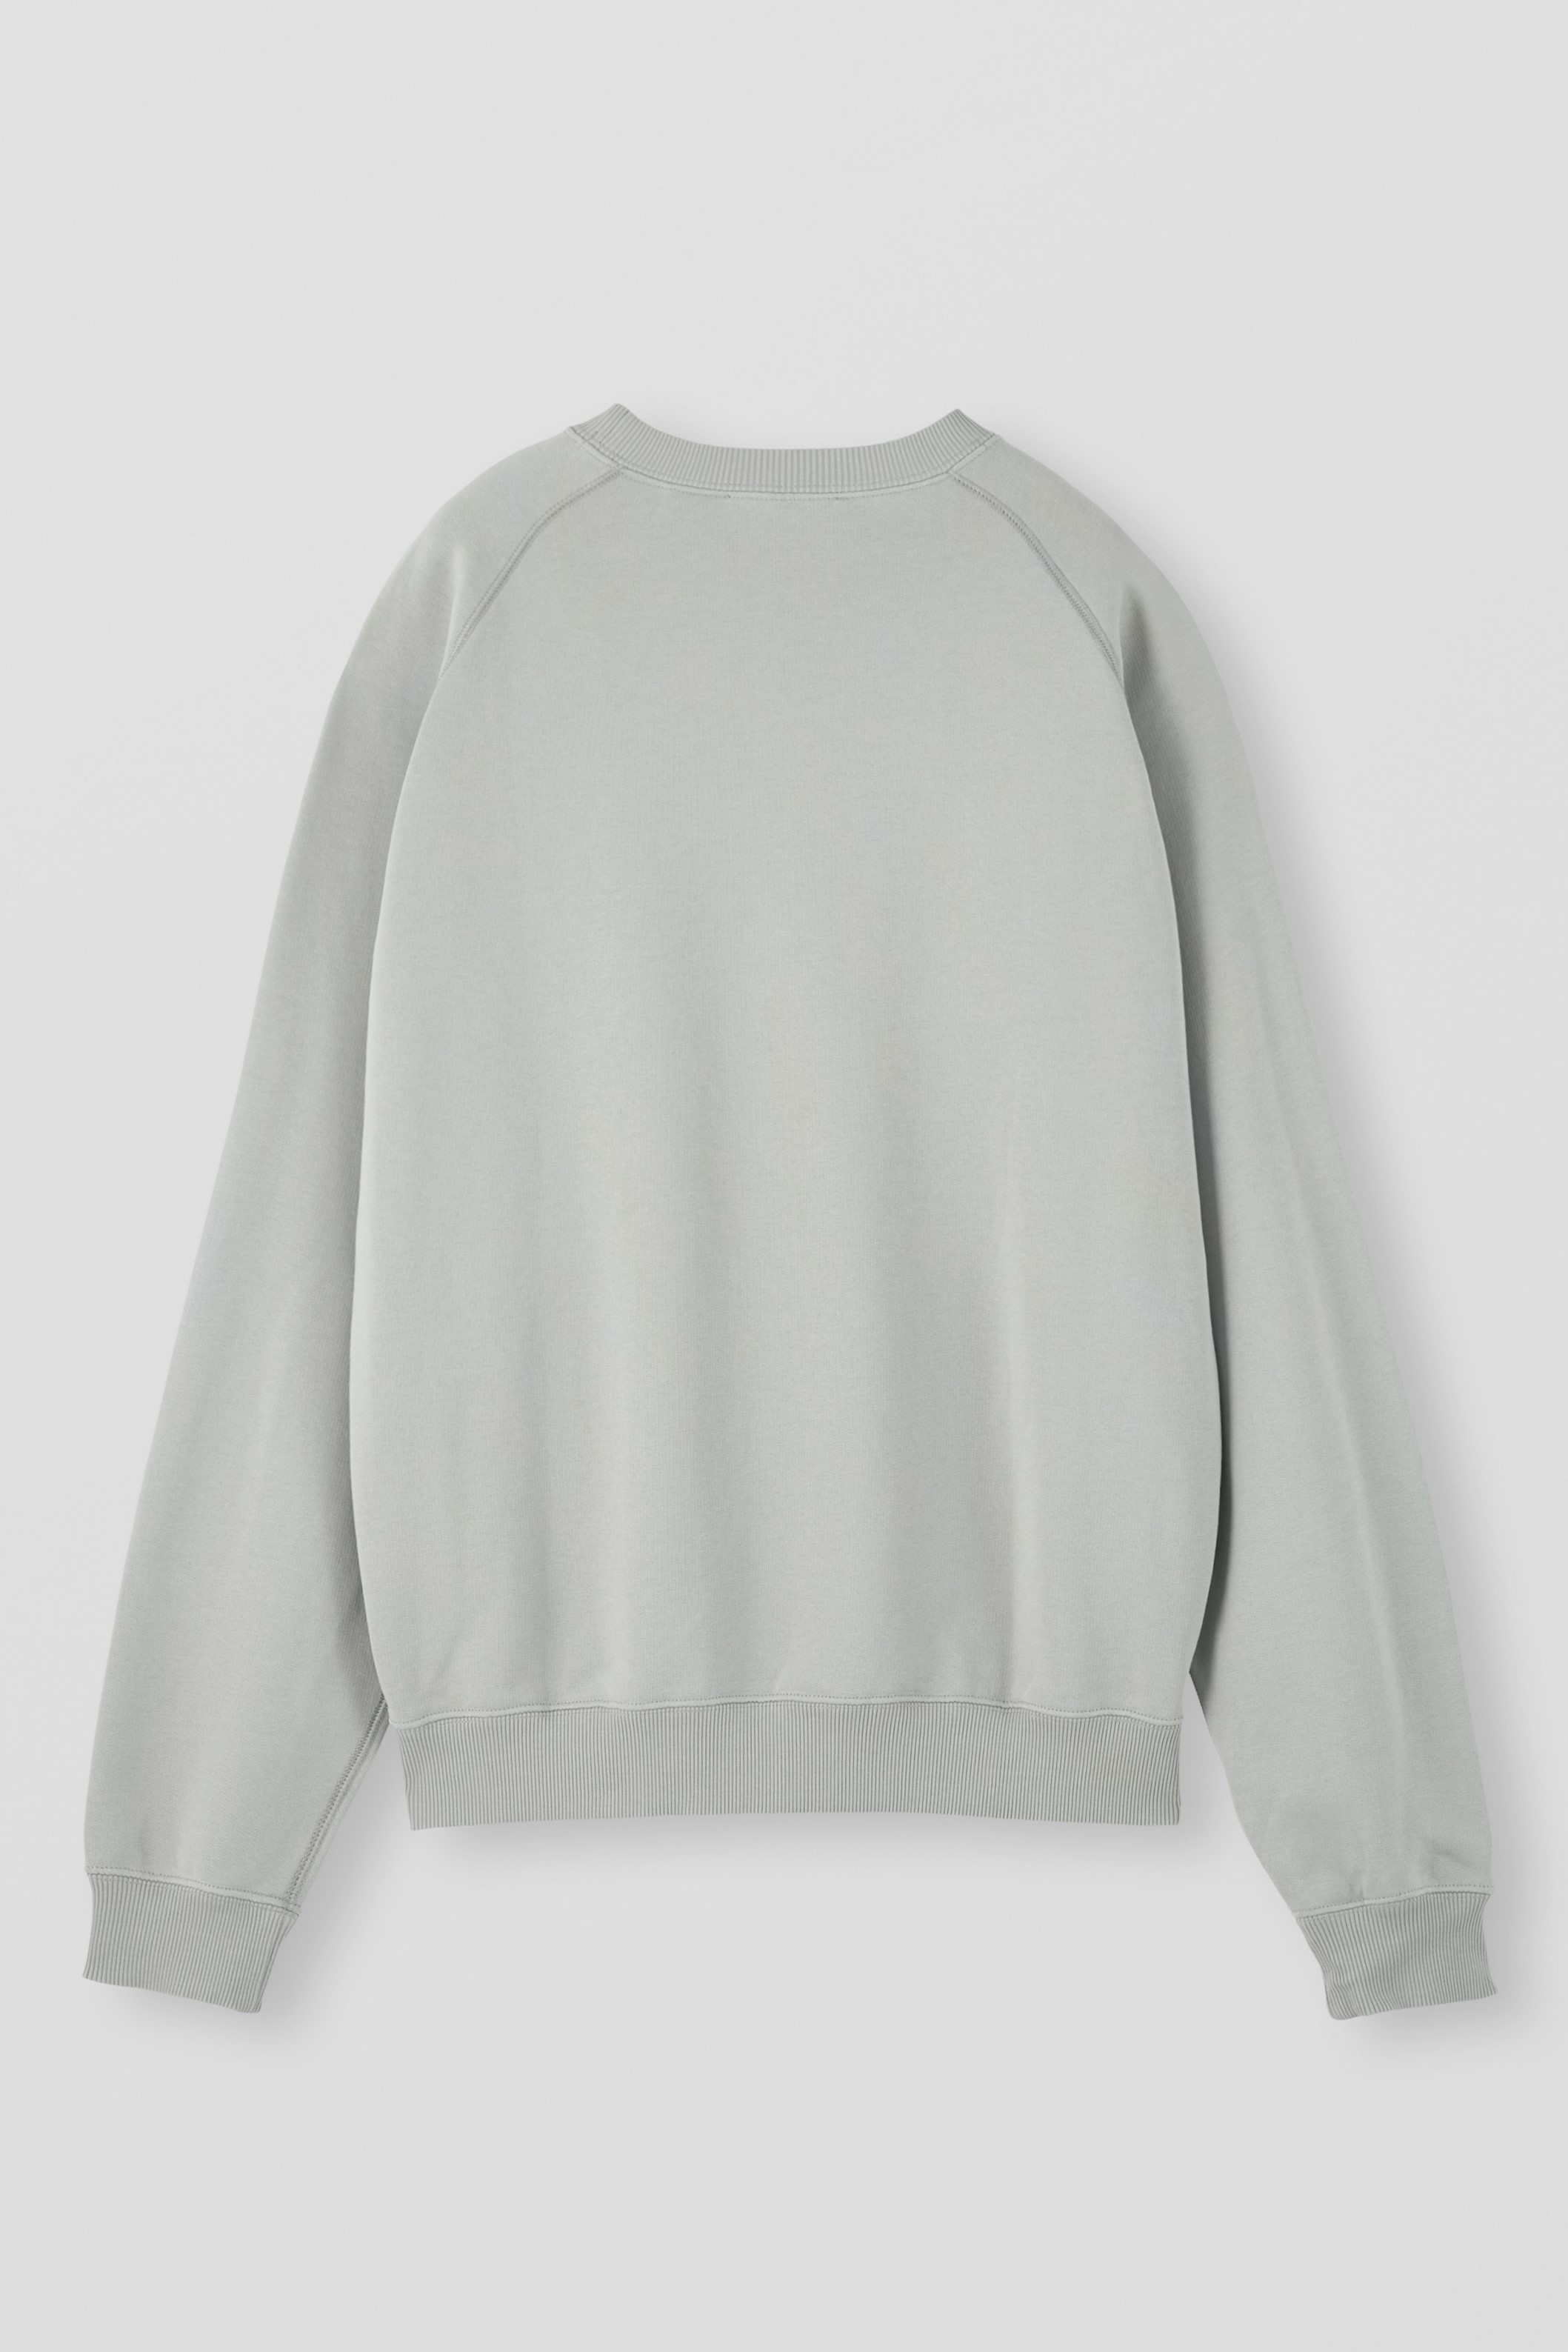 APPLIED ART FORMS Raglan Sweater in Ghost Grey XL